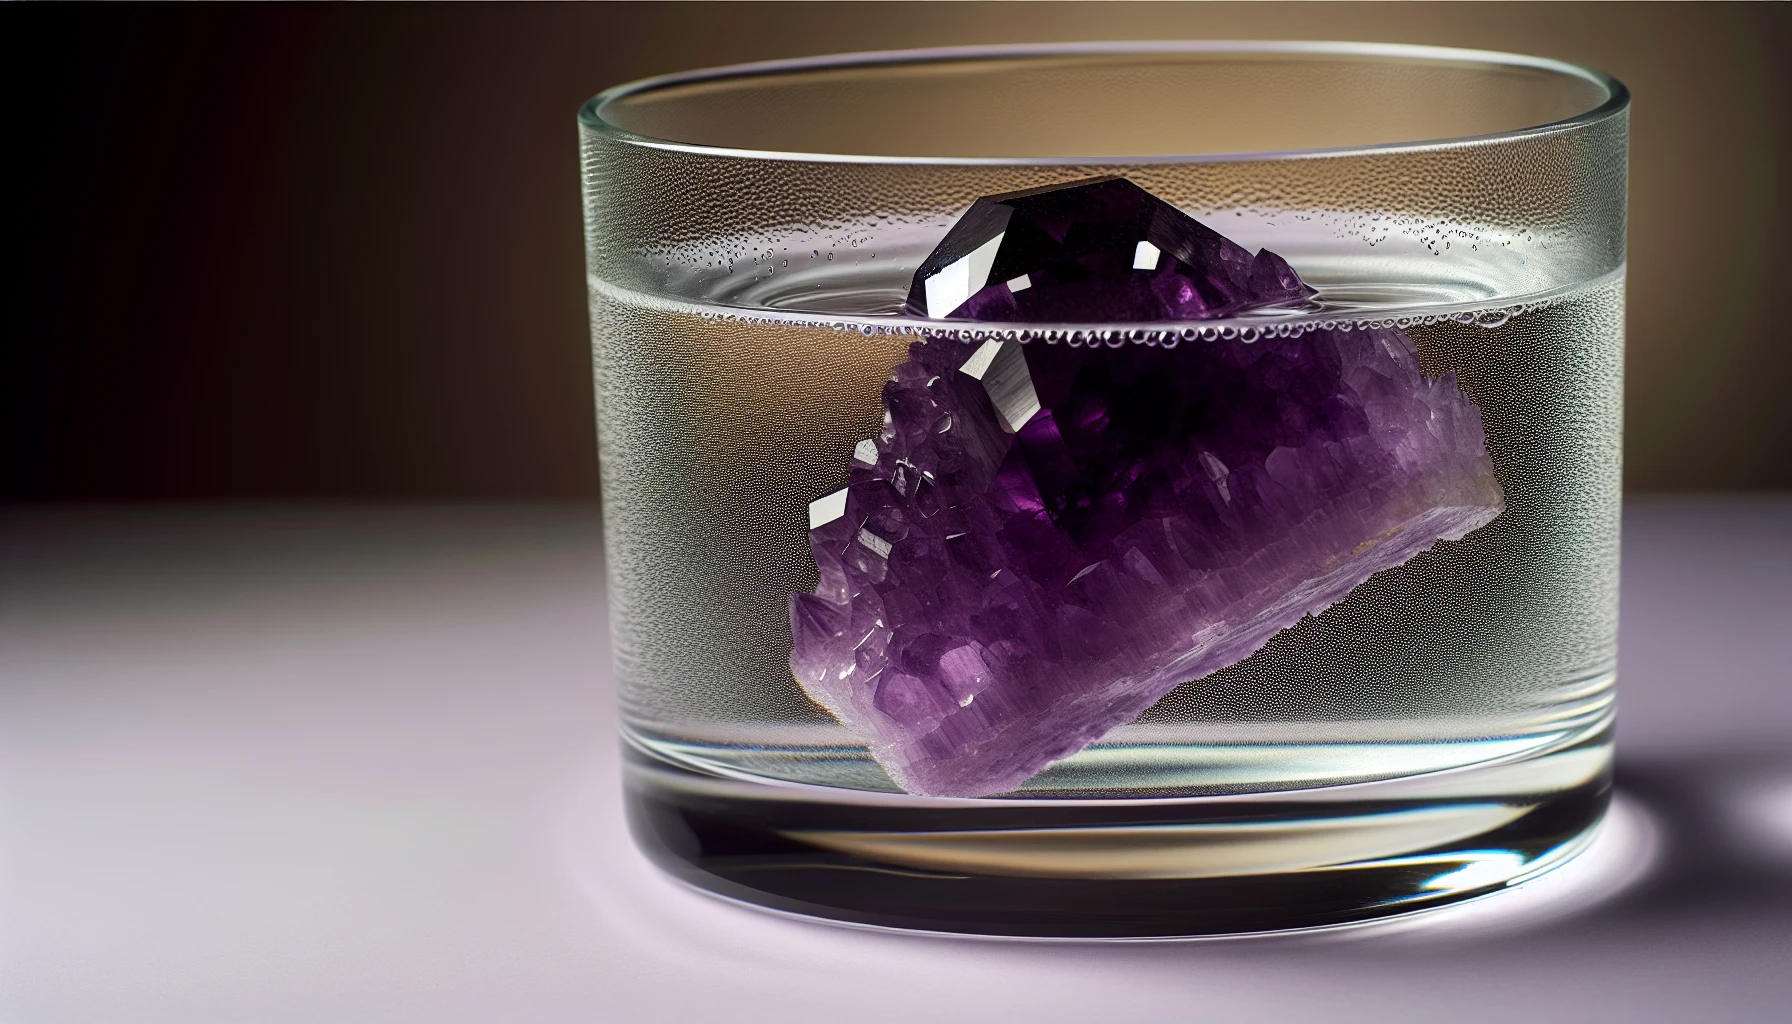 Amethyst crystal in water